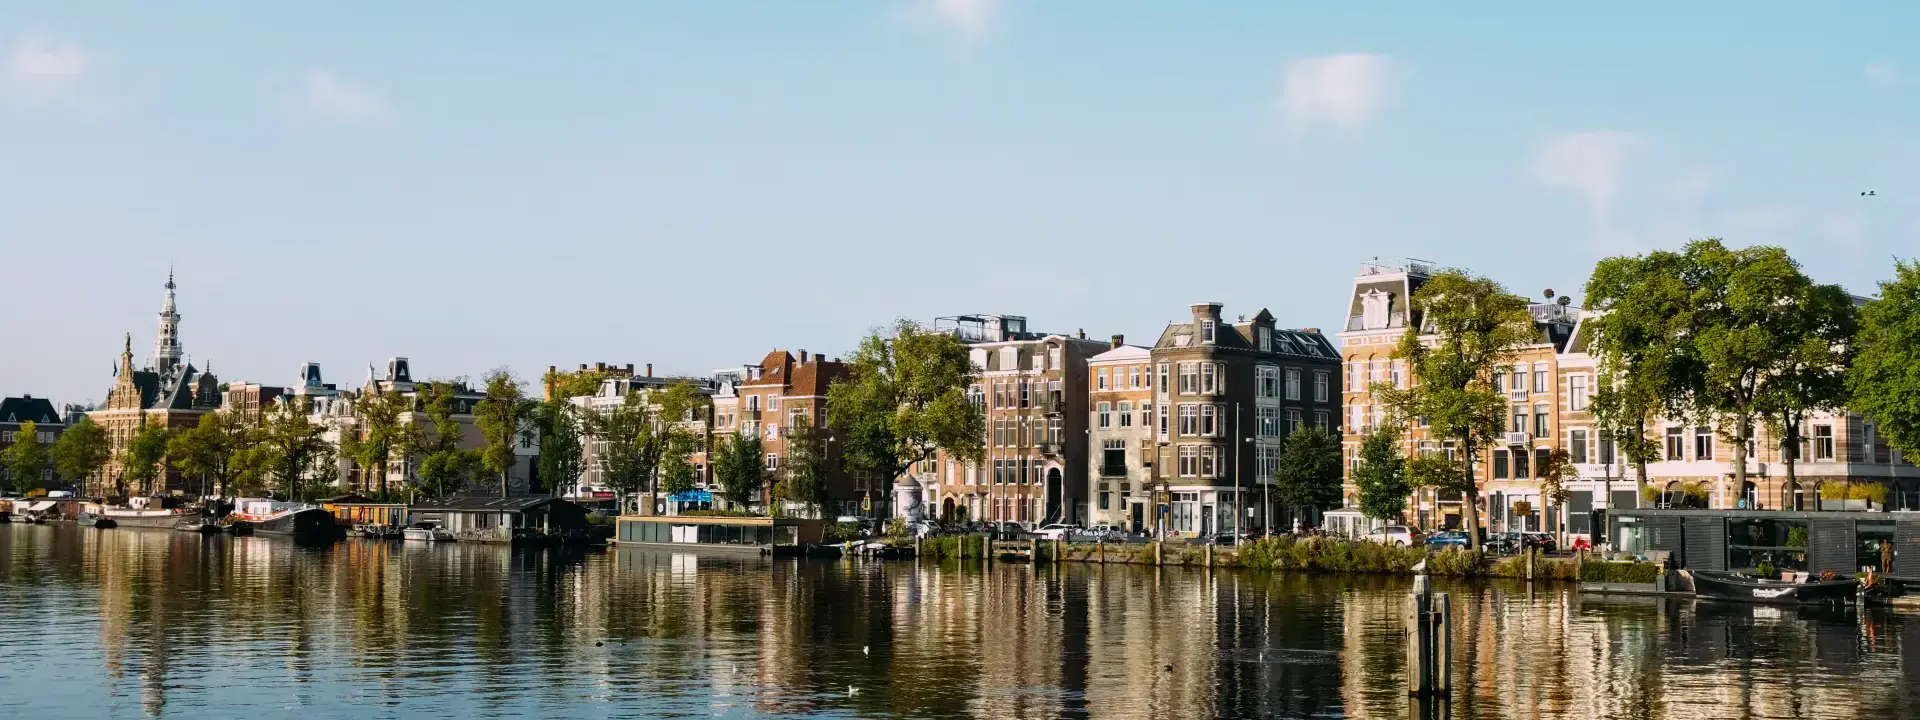 Haarlemmermeer Netherlands